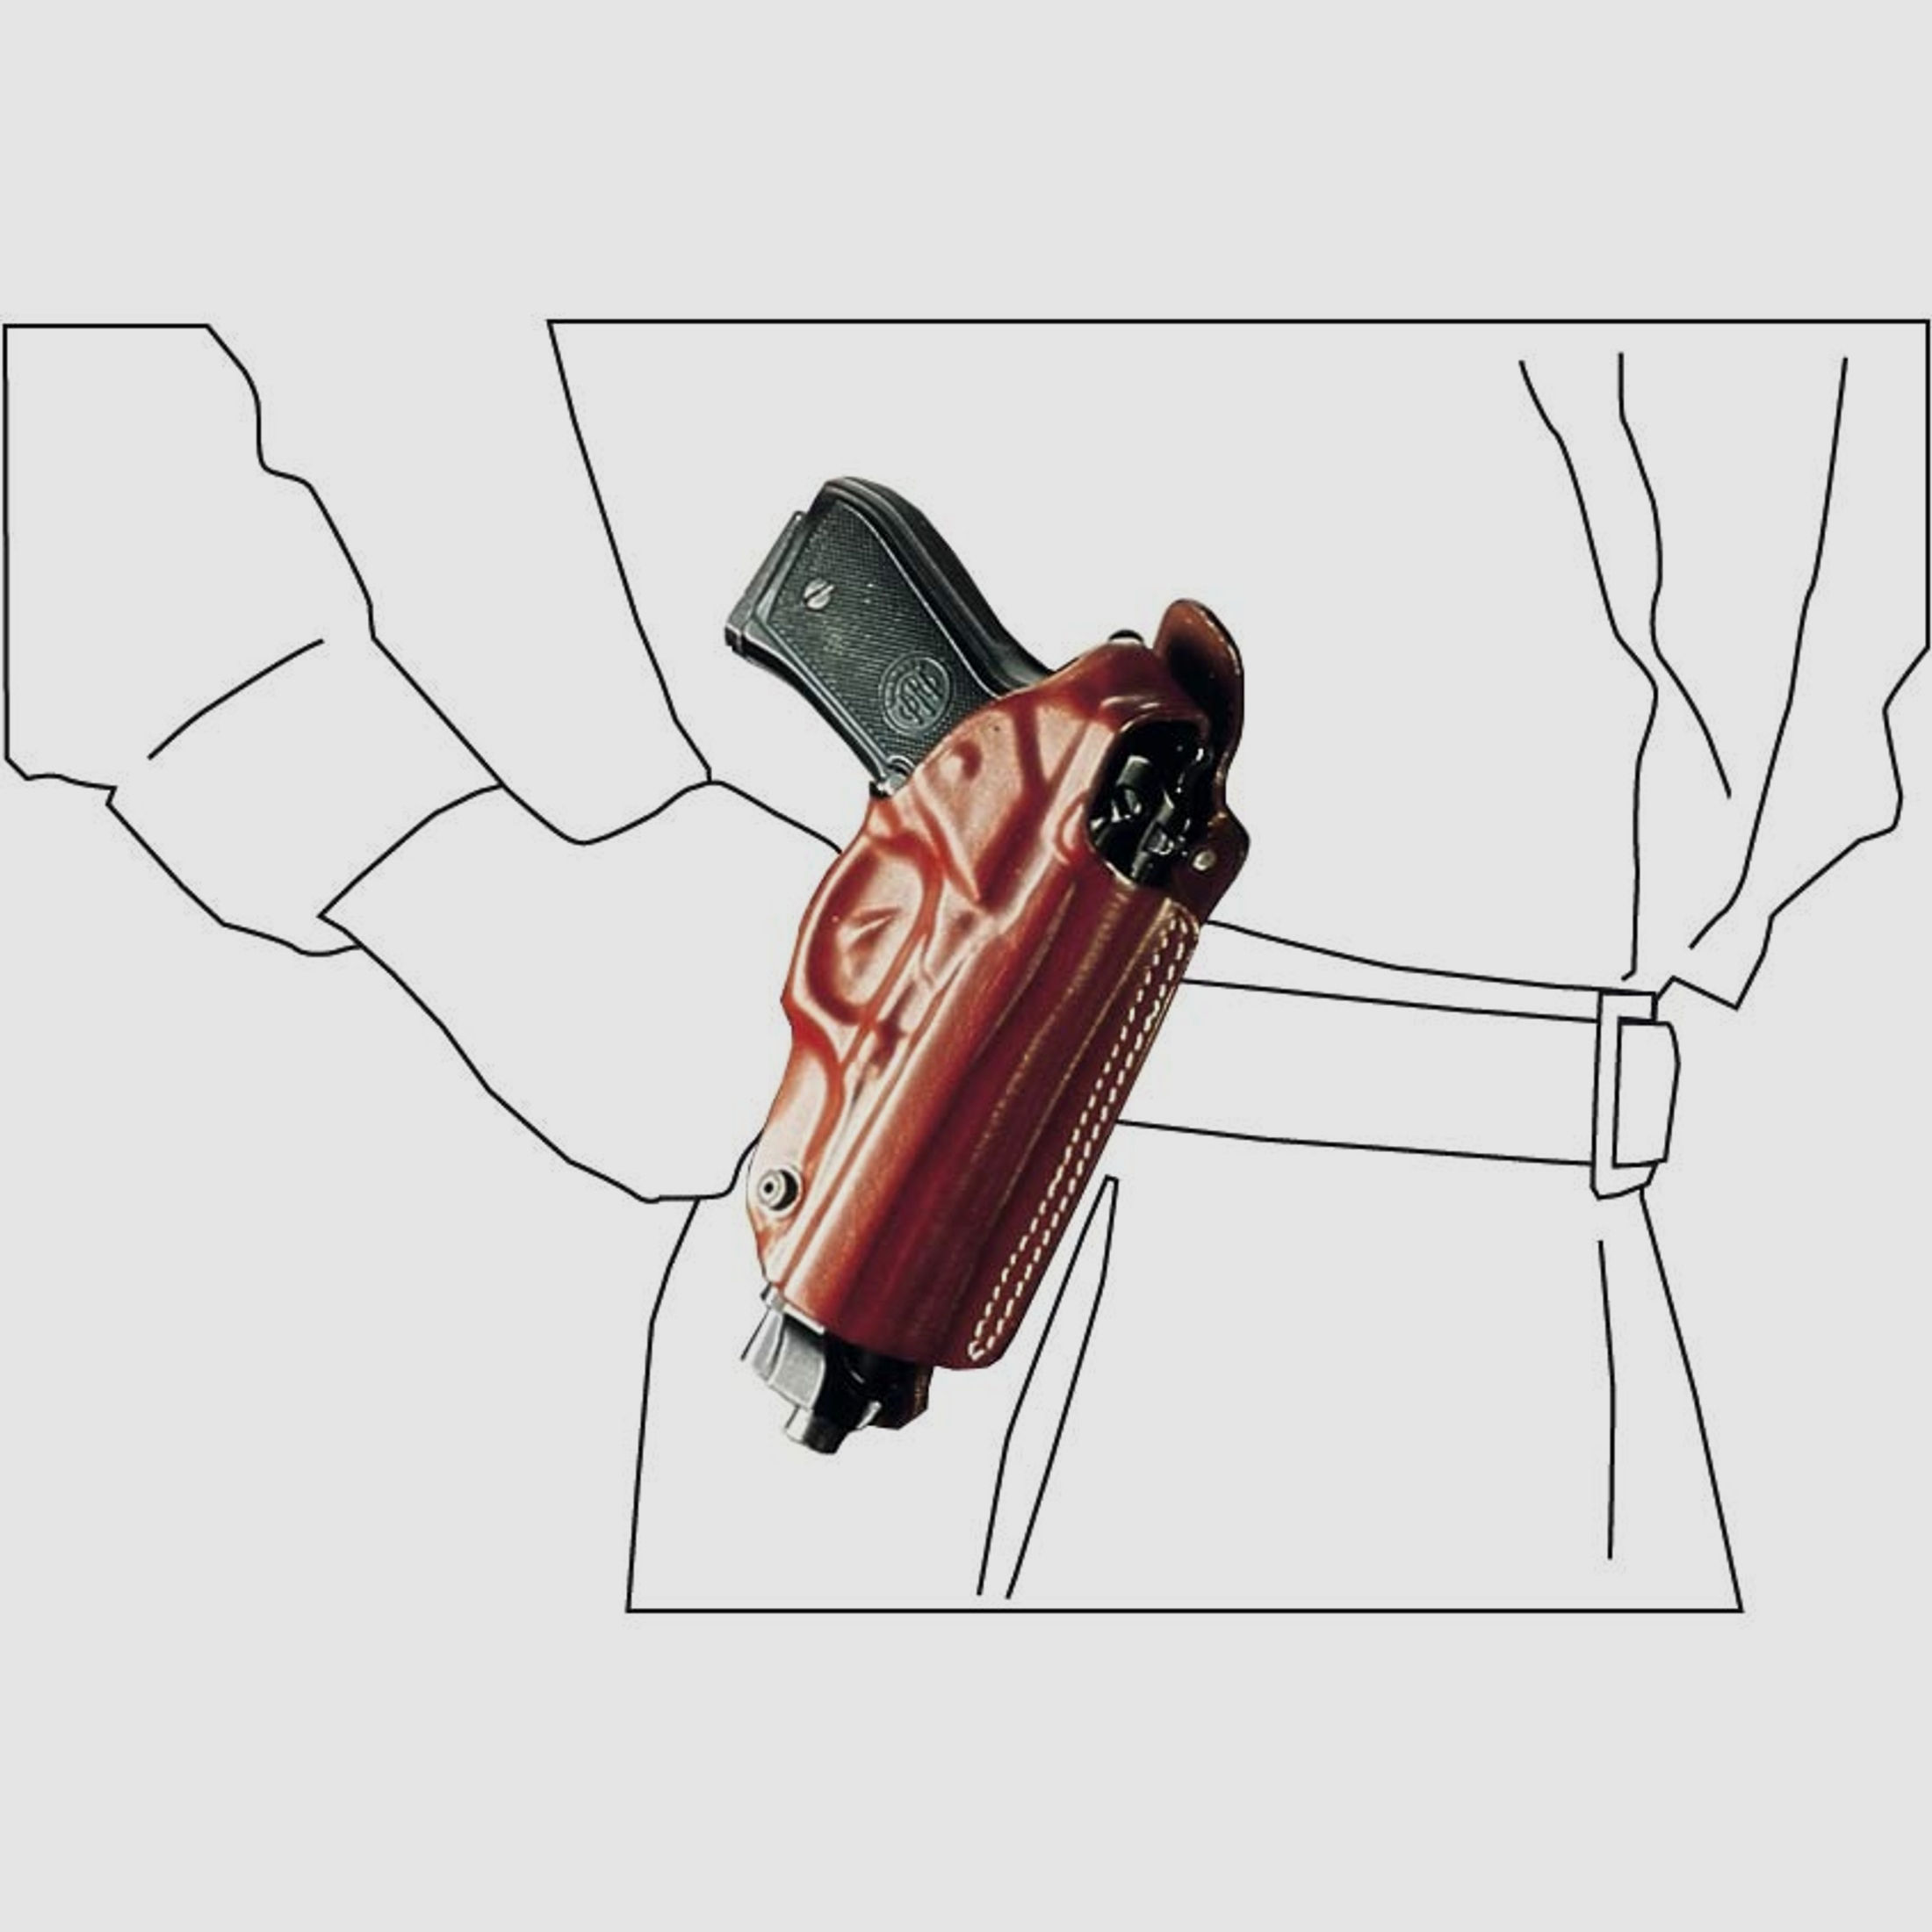 Mehrzweck-Schulterholster/Gürtelholster "Miami" Glock 26/27, Walther PPS-Braun-Rechtshänder